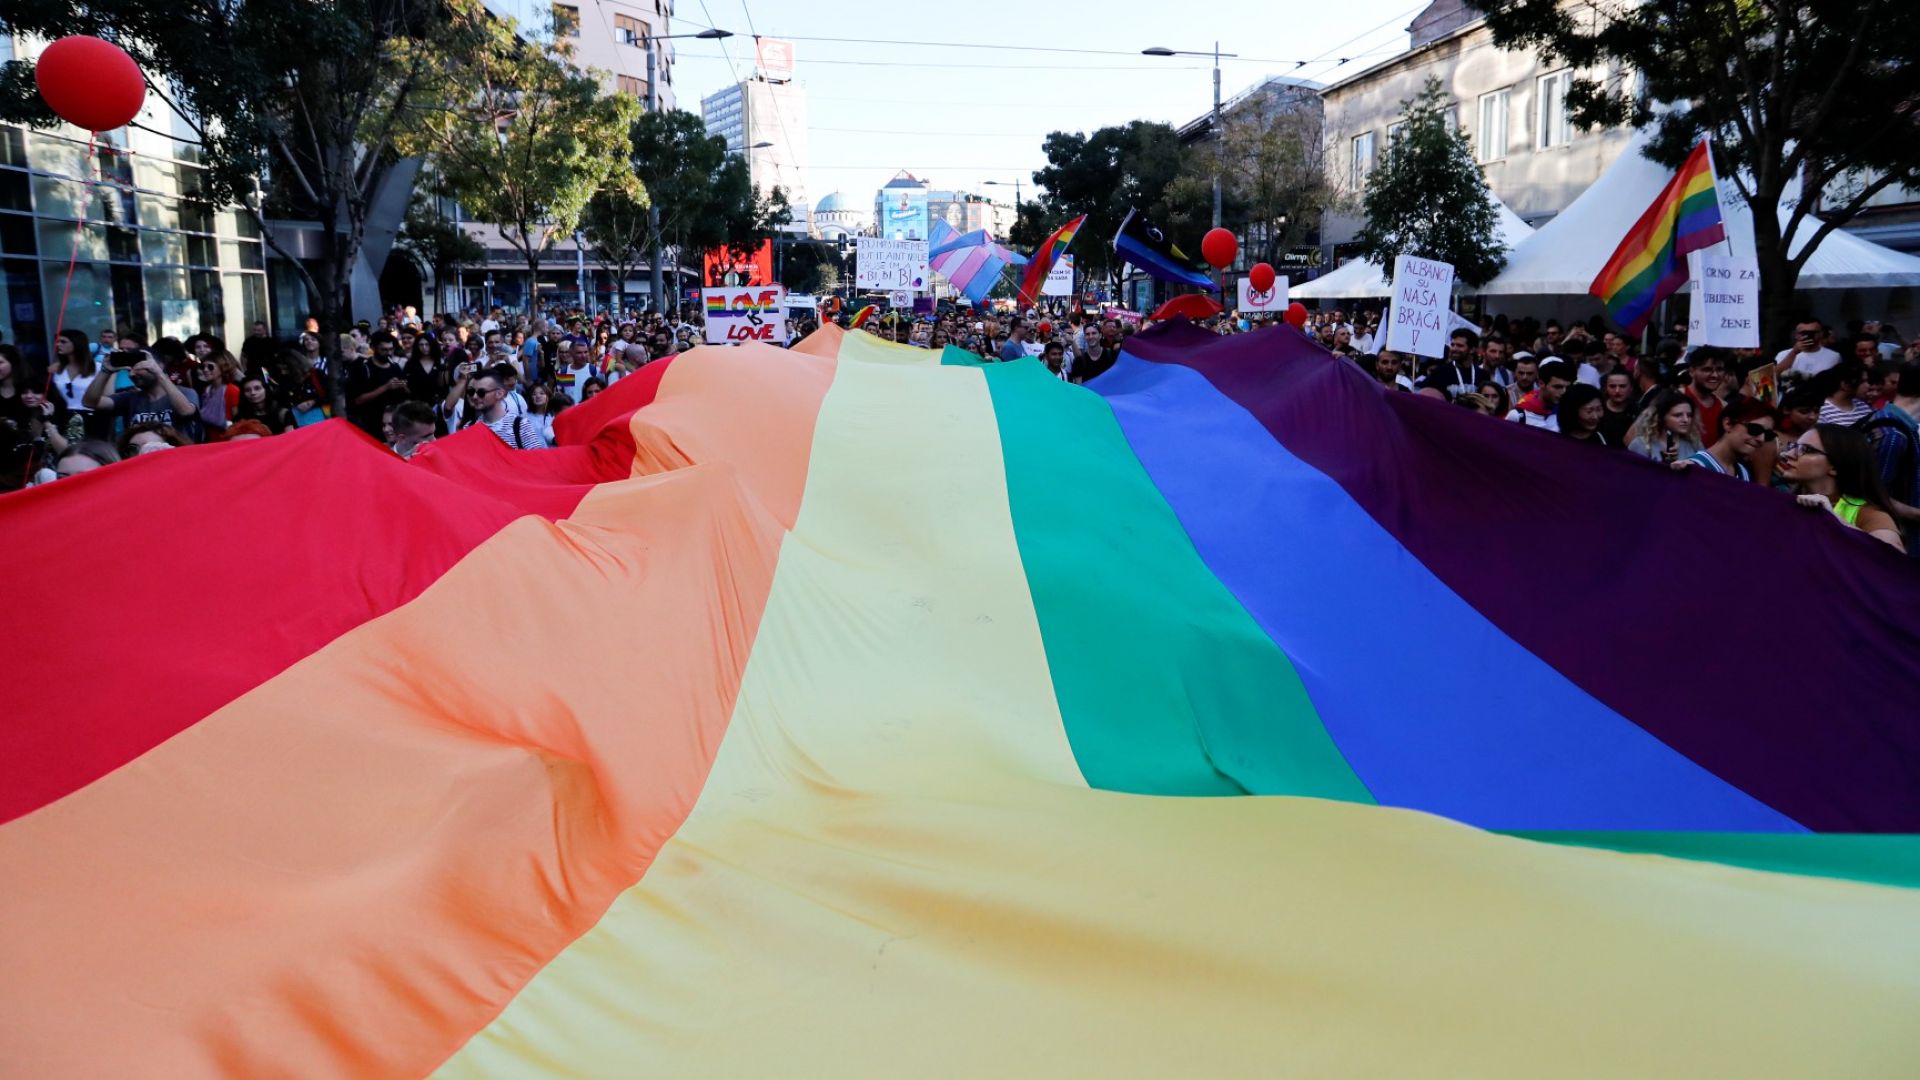 Светият синод отново заклейми гей парада в София, изрази притеснение за младежта